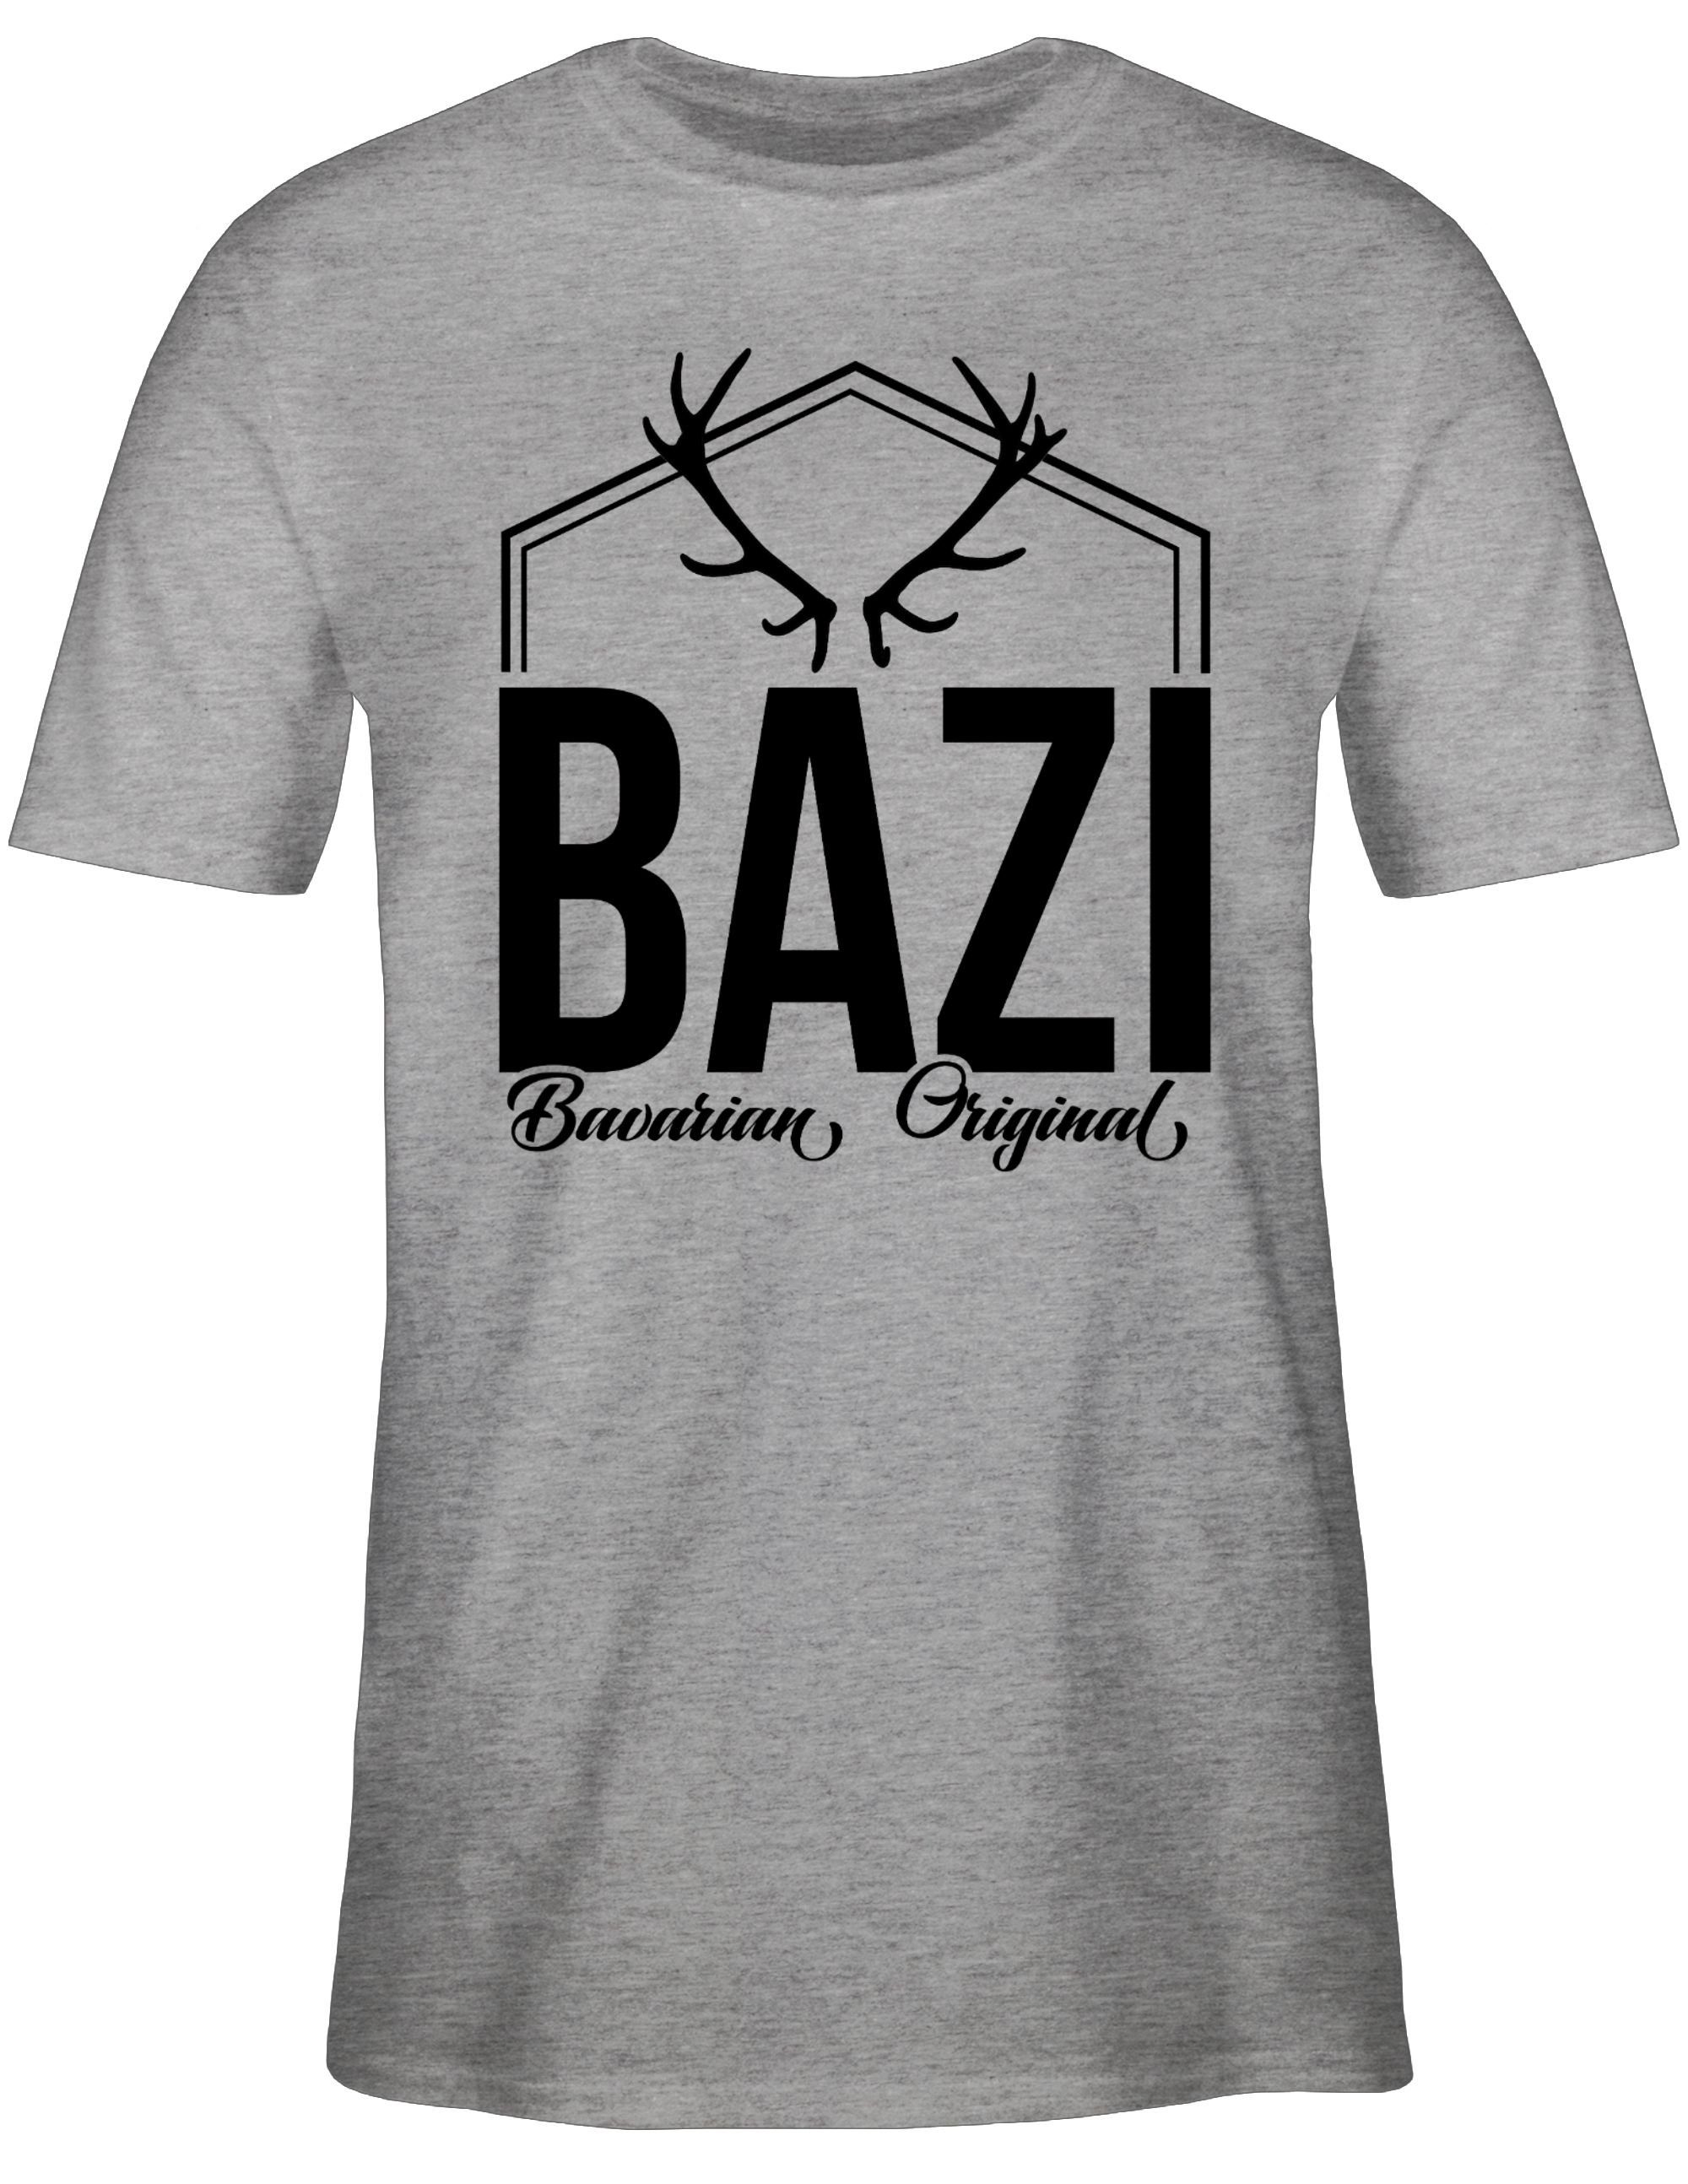 Bayern T-Shirt 2 Original - Grau meliert Männer Bavarian Bazi Shirtracer